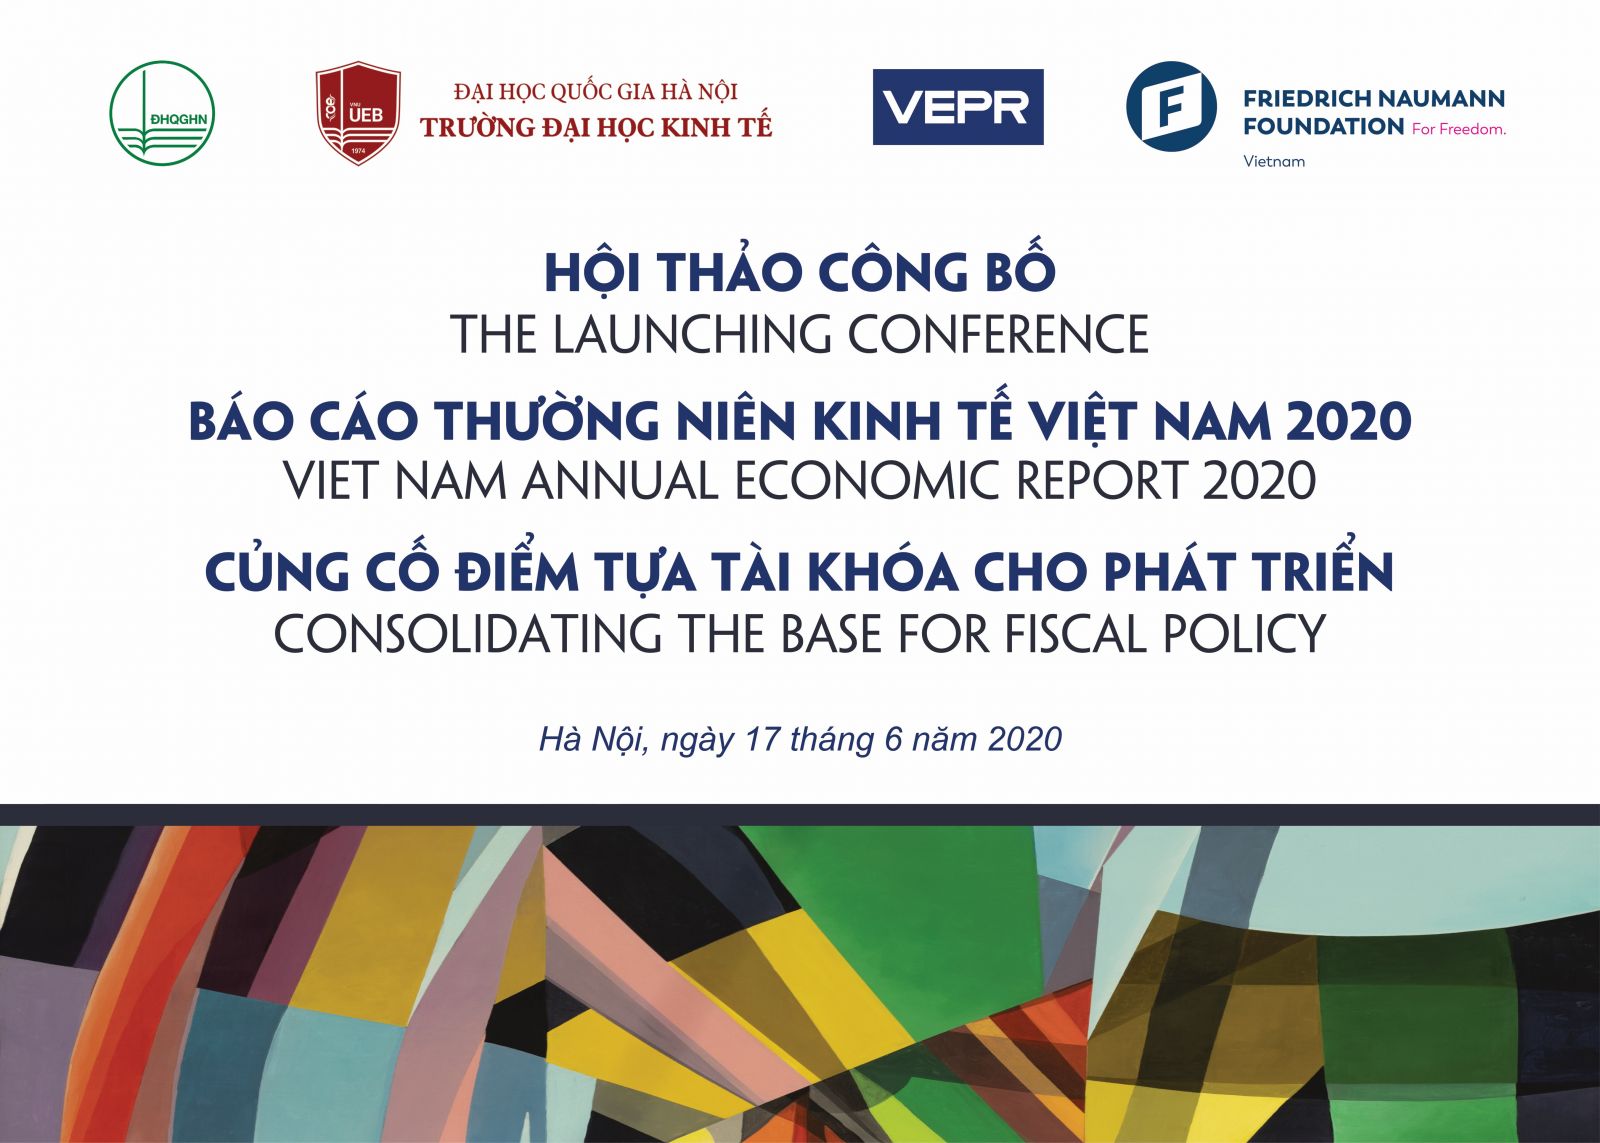 GIẤY MỜI: Tham dự Hội thảo Công bố Báo cáo Thường niên Kinh tế Việt Nam 2020 